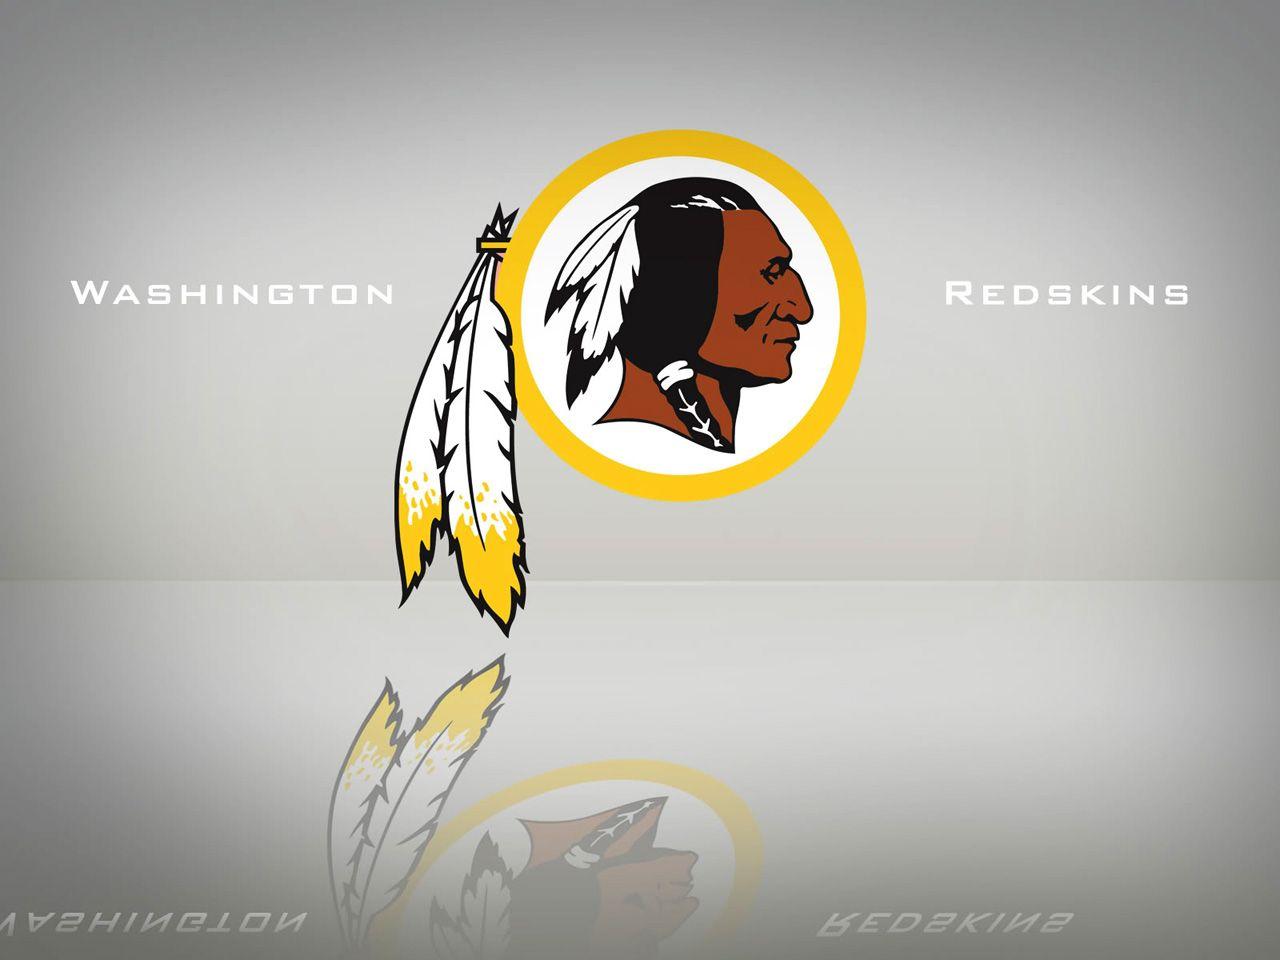 Download Washington Redskins Wallpaper Gallery